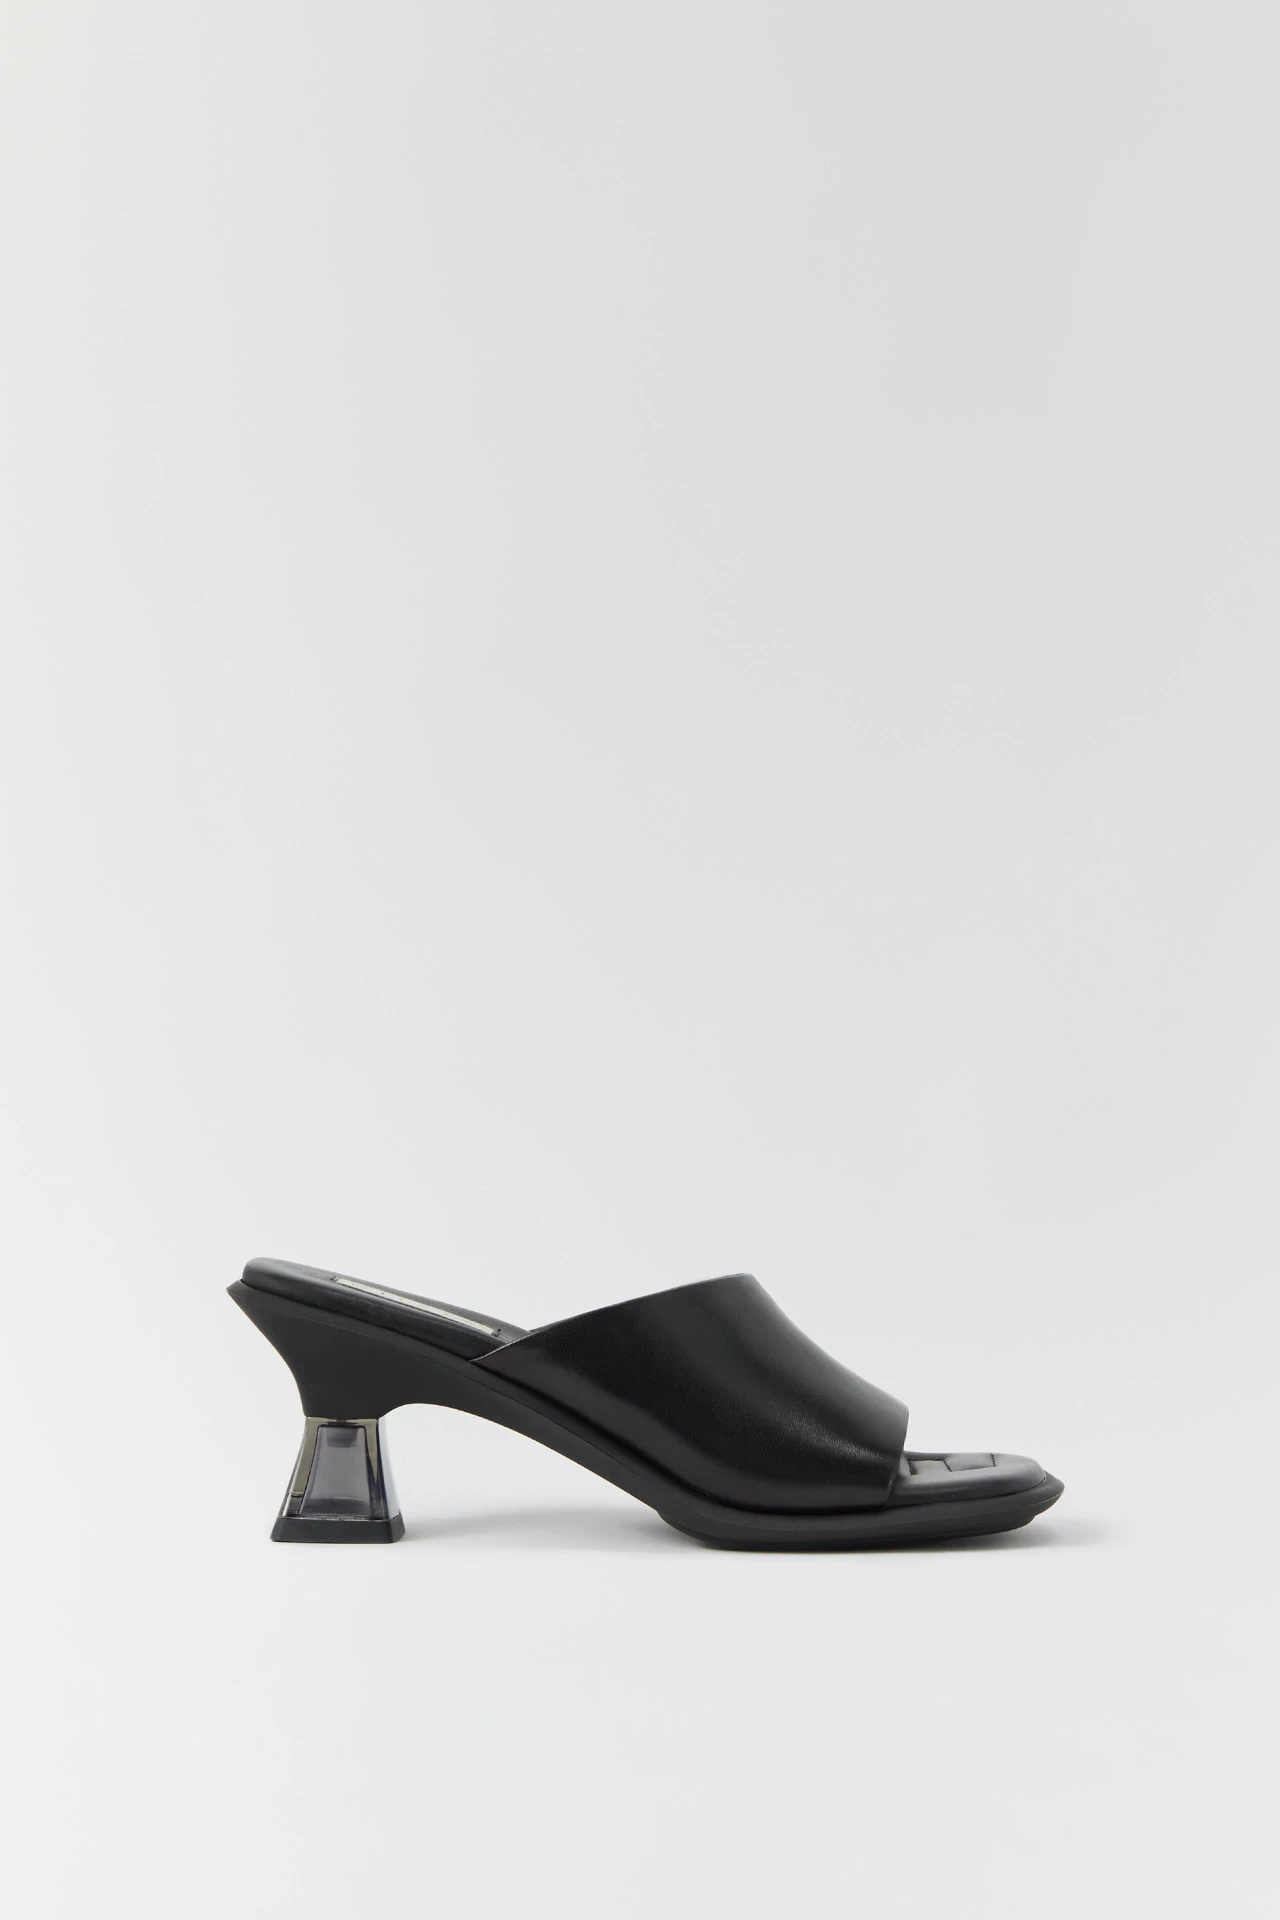 Miista-synthia-black-sandals-01